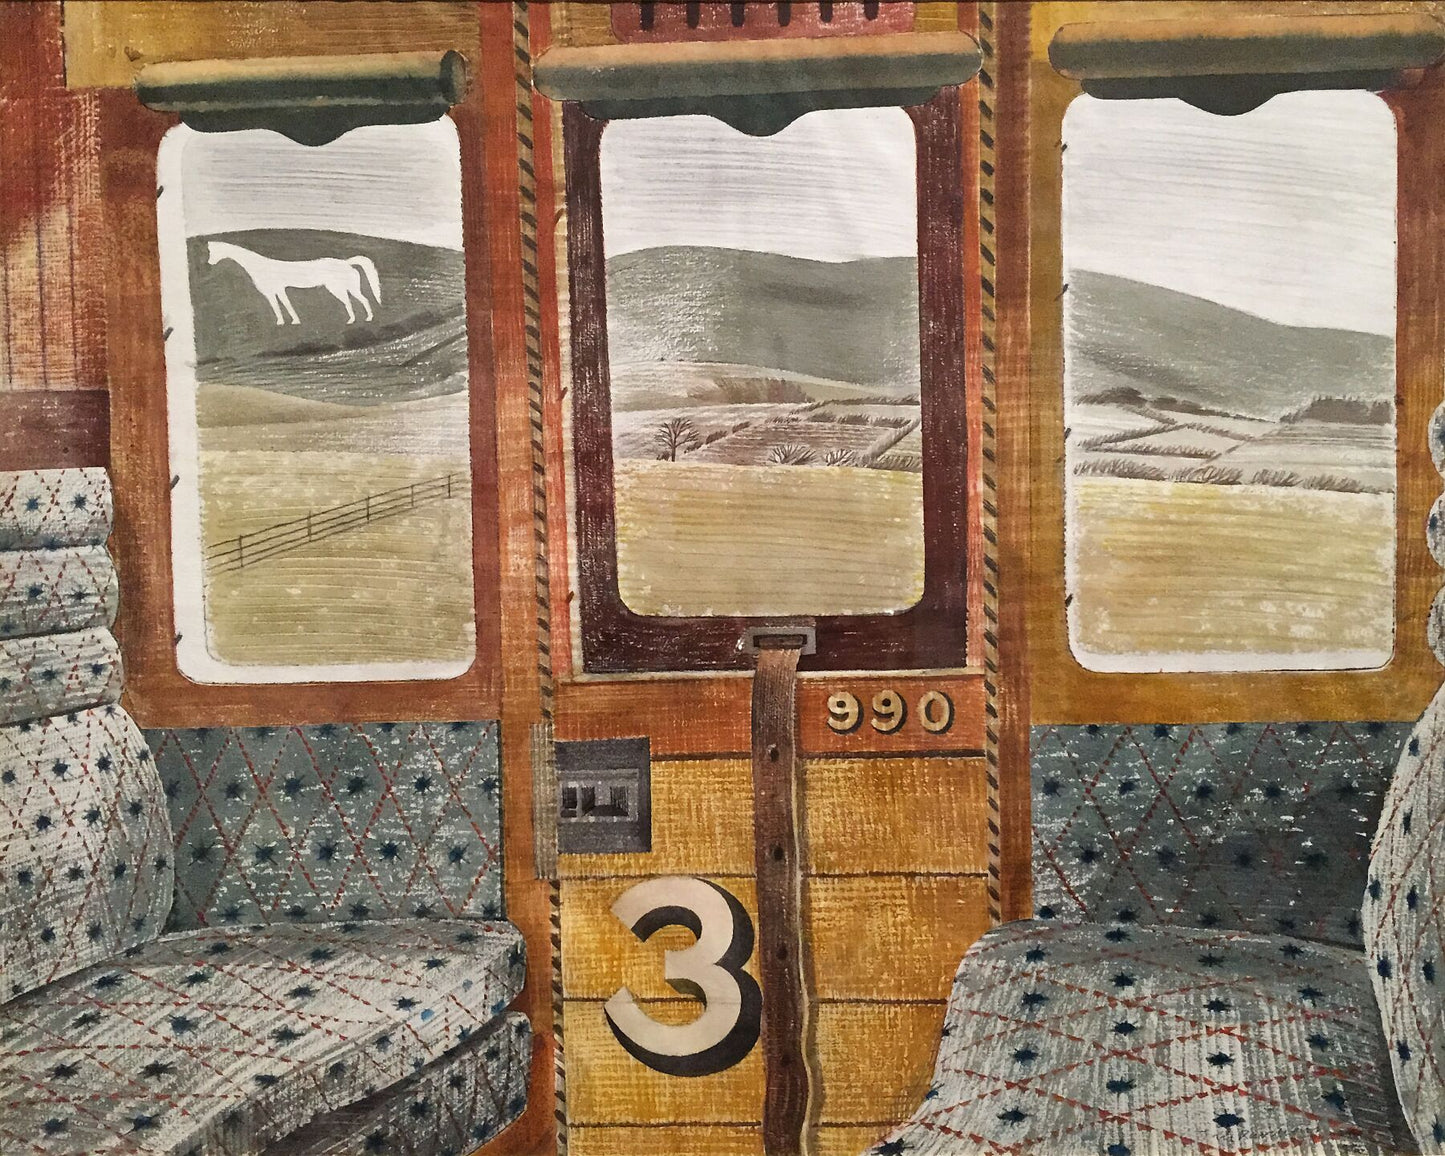 Train Landscape by Eric Ravilious - 1939